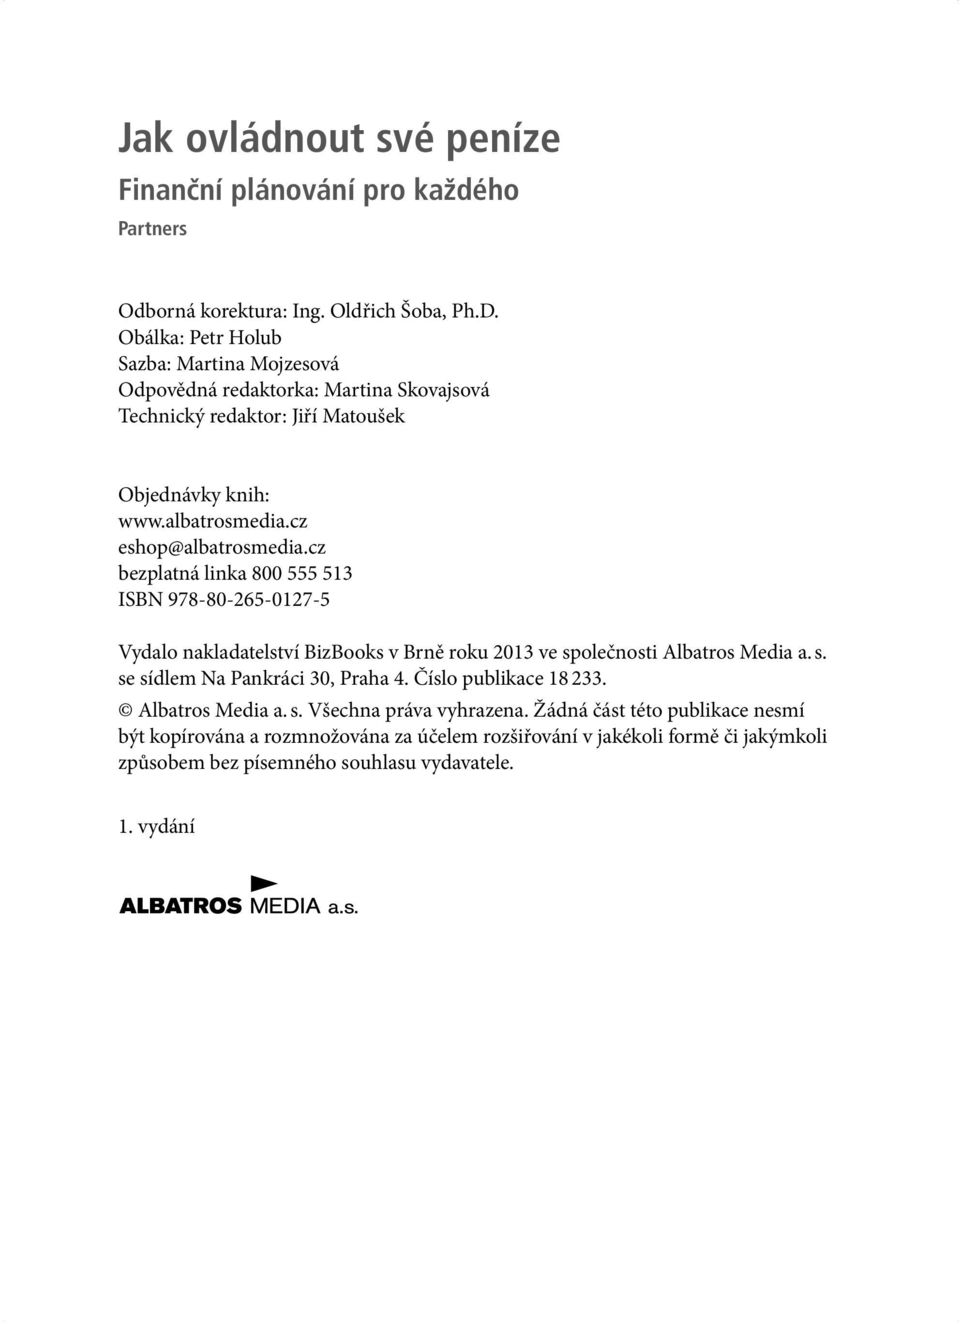 cz eshop@albatrosmedia.cz bezplatná linka 800 555 513 ISBN 978-80-265-0127-5 Vydalo nakladatelství BizBooks v Brně roku 2013 ve společnosti Albatros Media a. s. se sídlem Na Pankráci 30, Praha 4.